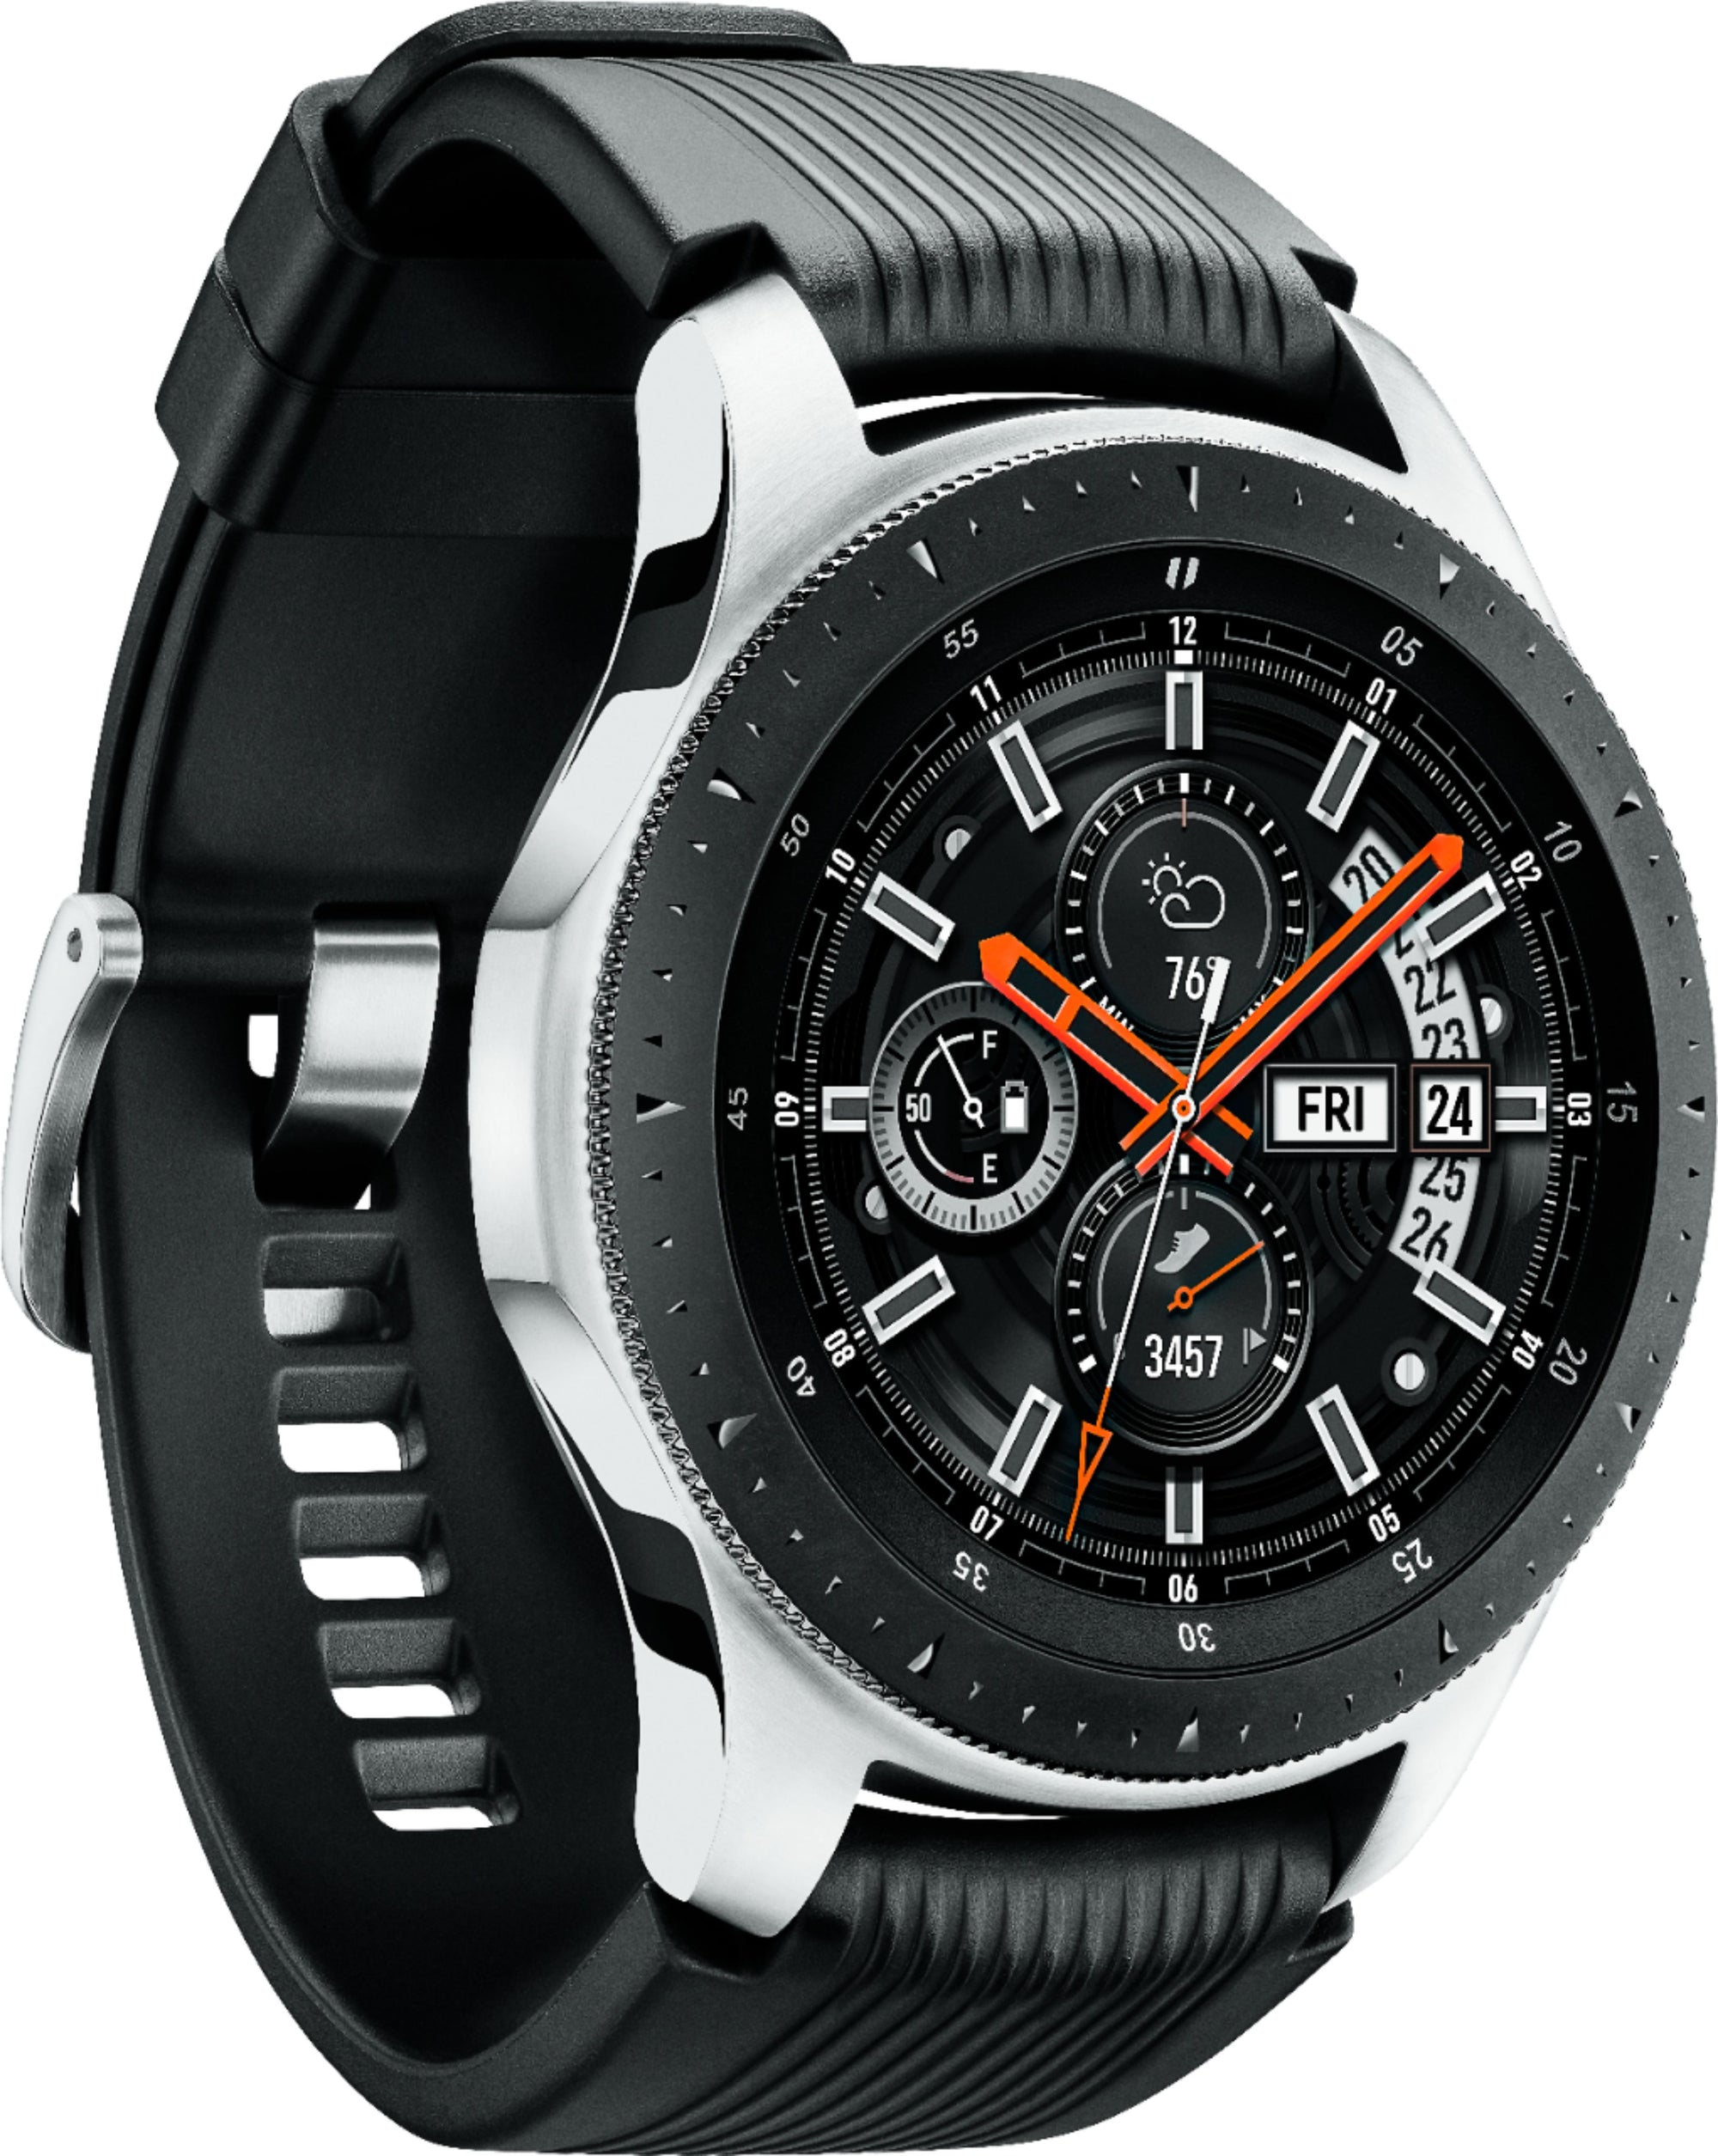 Samsung - GSRF SM-R800NZSAXAR  Geek Squad Certified Refurbished Galaxy Watch Smartwatch 46mm Stainless Steel - Silver